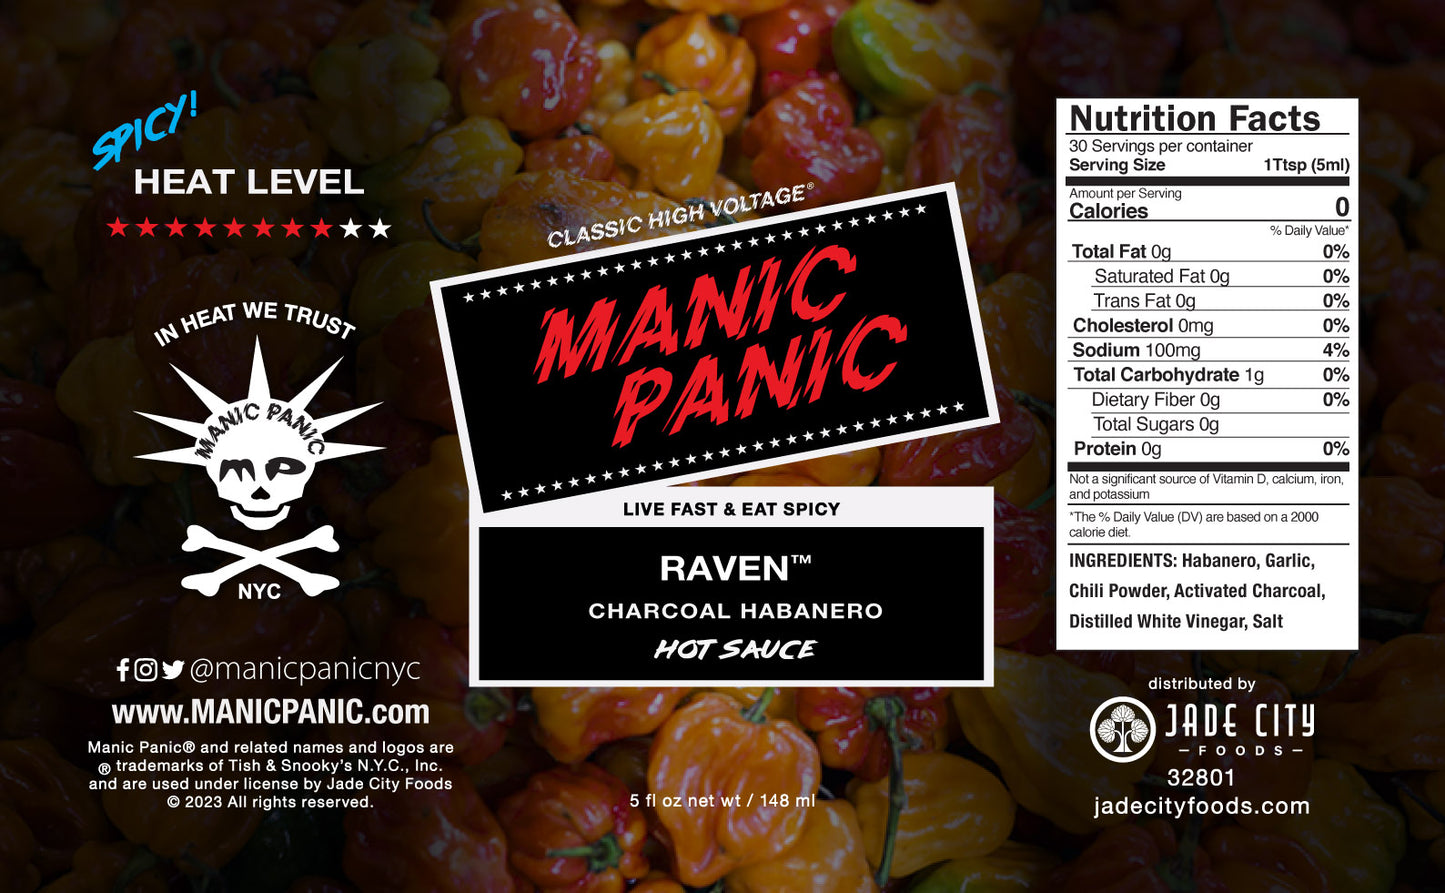 Raven : Charcoal Habanero Sauce